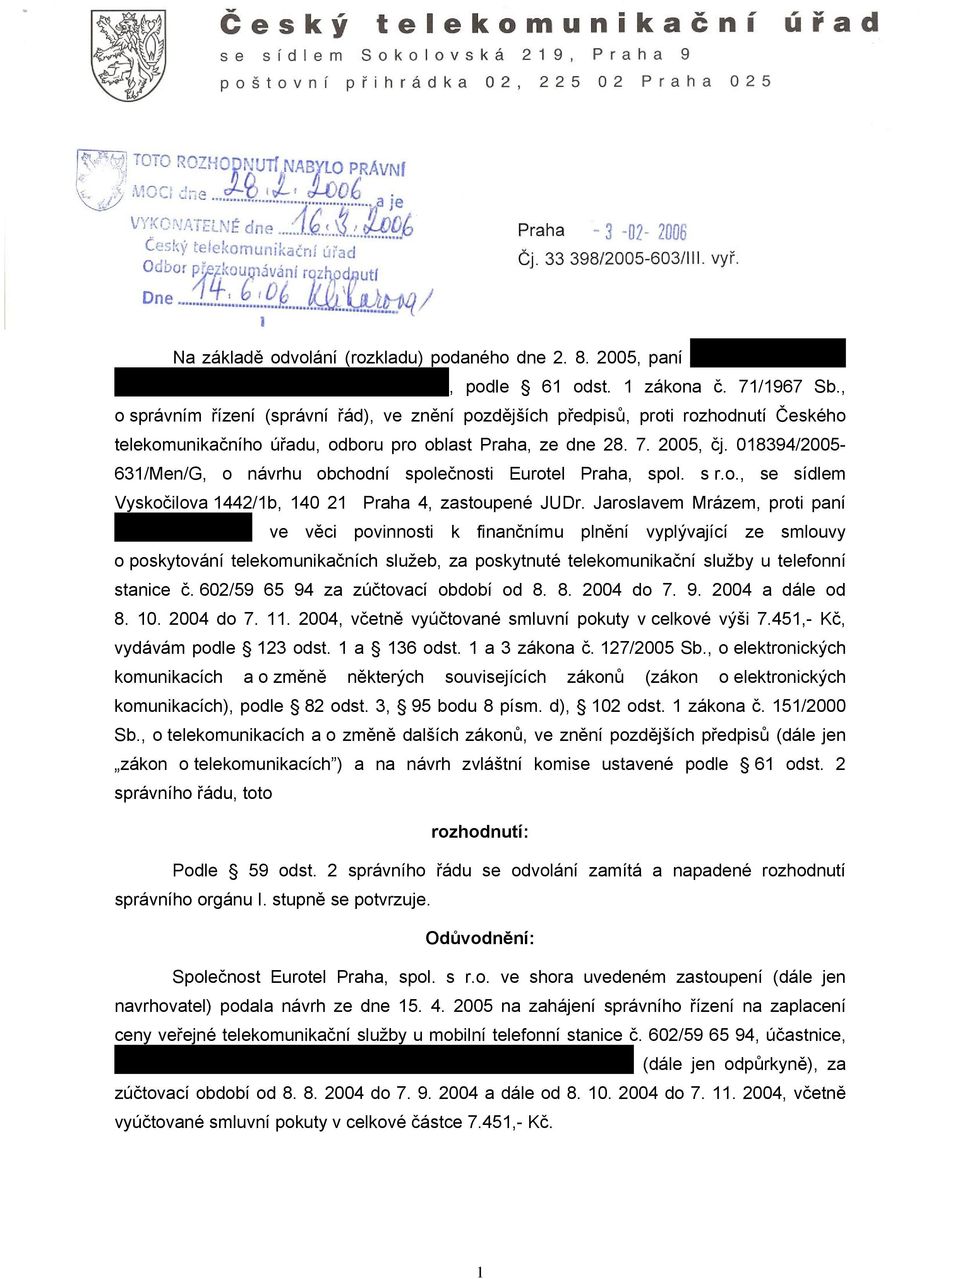 018394/2005-631/Men/G, o návrhu obchodní společnosti Eurotel Praha, spol. s r.o., se sídlem Vyskočilova 1442/1b, 140 21 Praha 4, zastoupené JUDr.